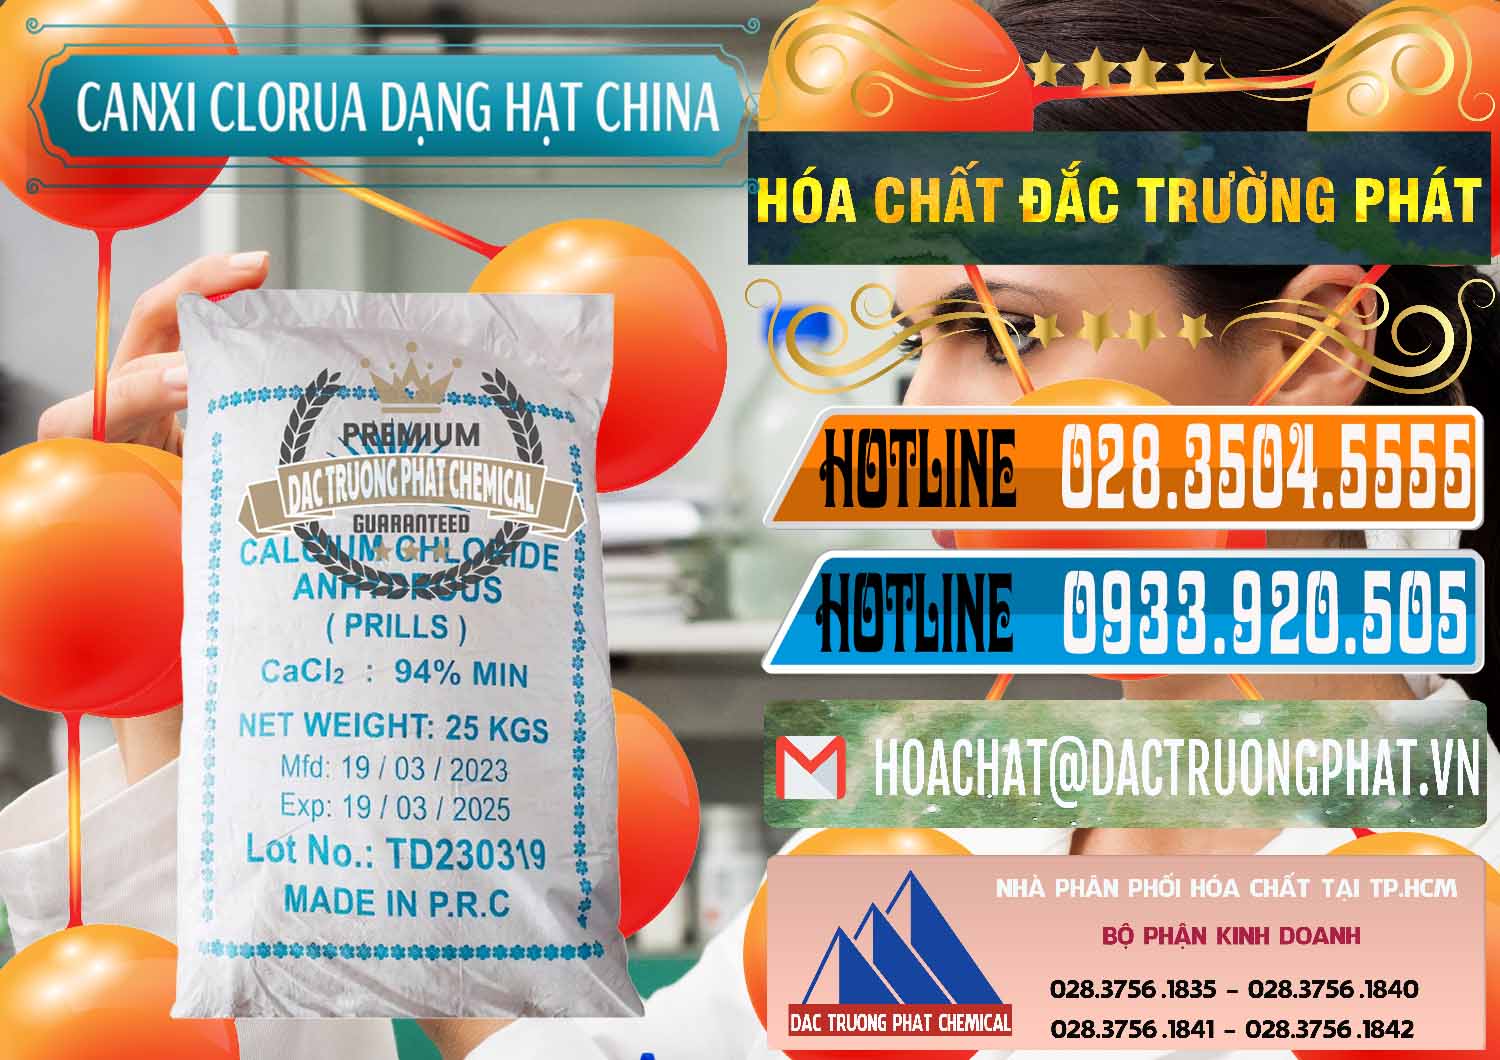 Nơi cung cấp & bán CaCl2 – Canxi Clorua 94% Dạng Hạt Trung Quốc China - 0373 - Đơn vị bán & cung cấp hóa chất tại TP.HCM - stmp.net